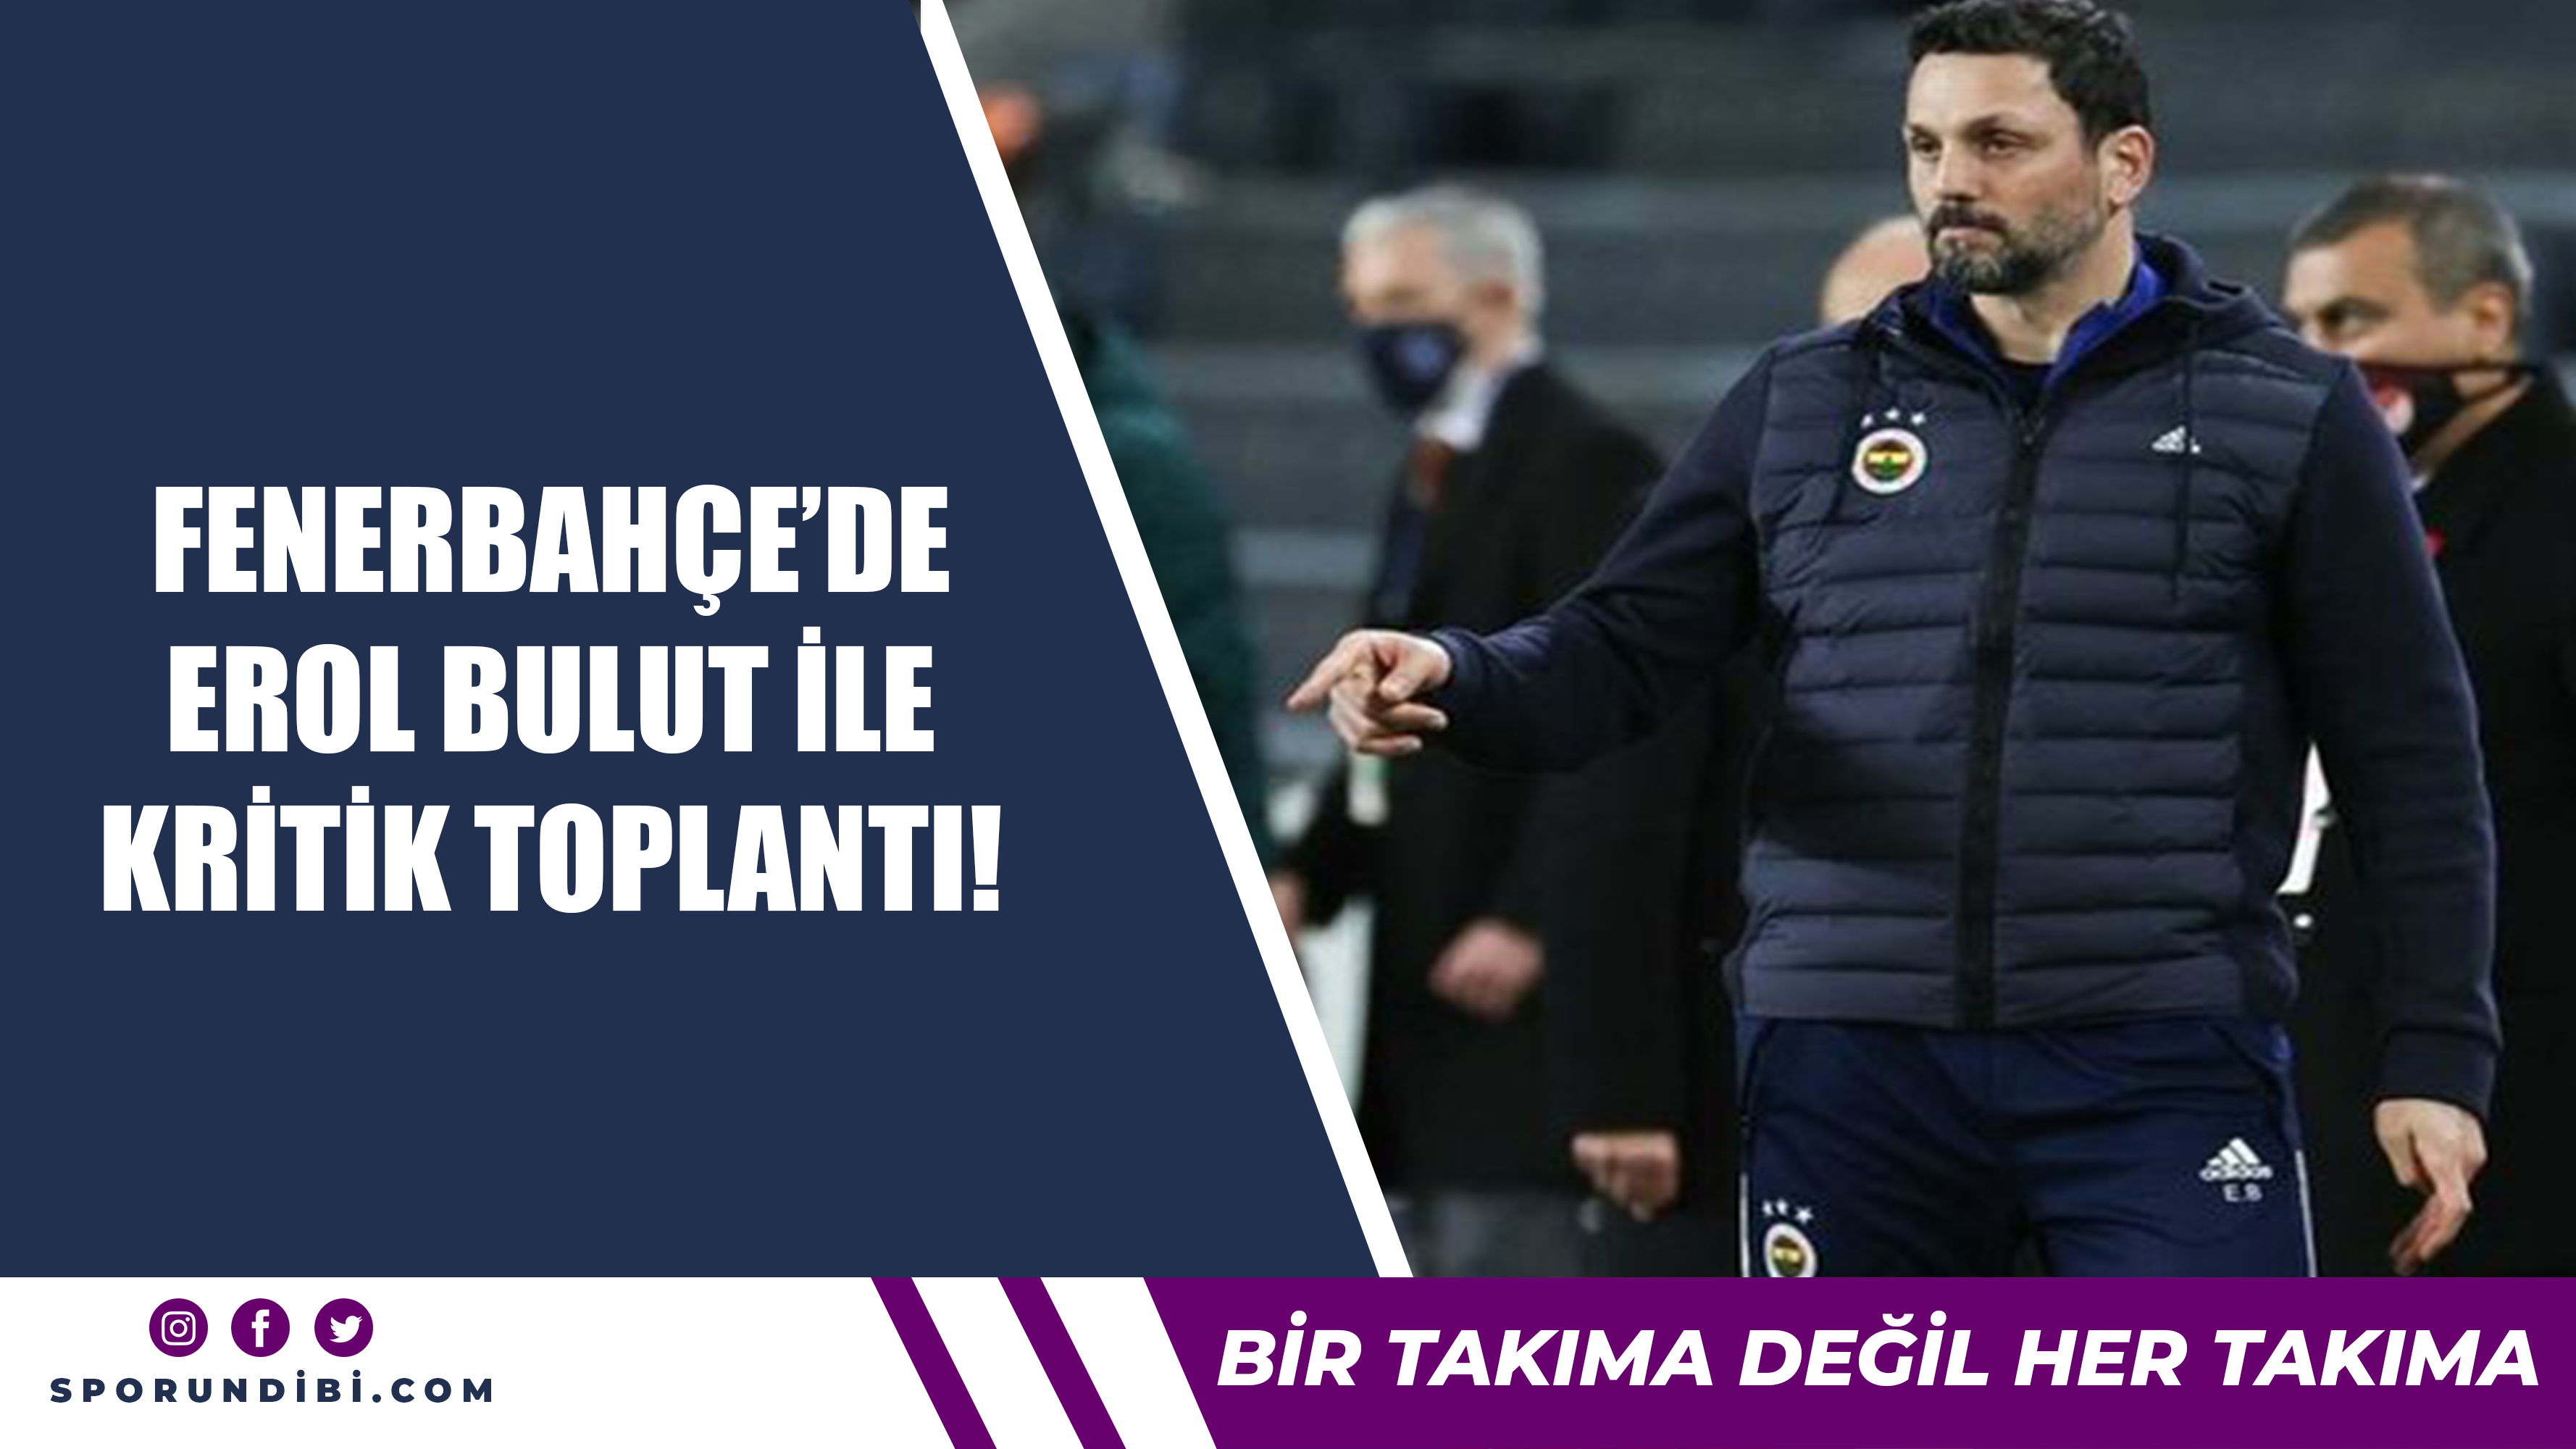 Fenerbahçe'de Erol Bulut ile kritik toplantı!